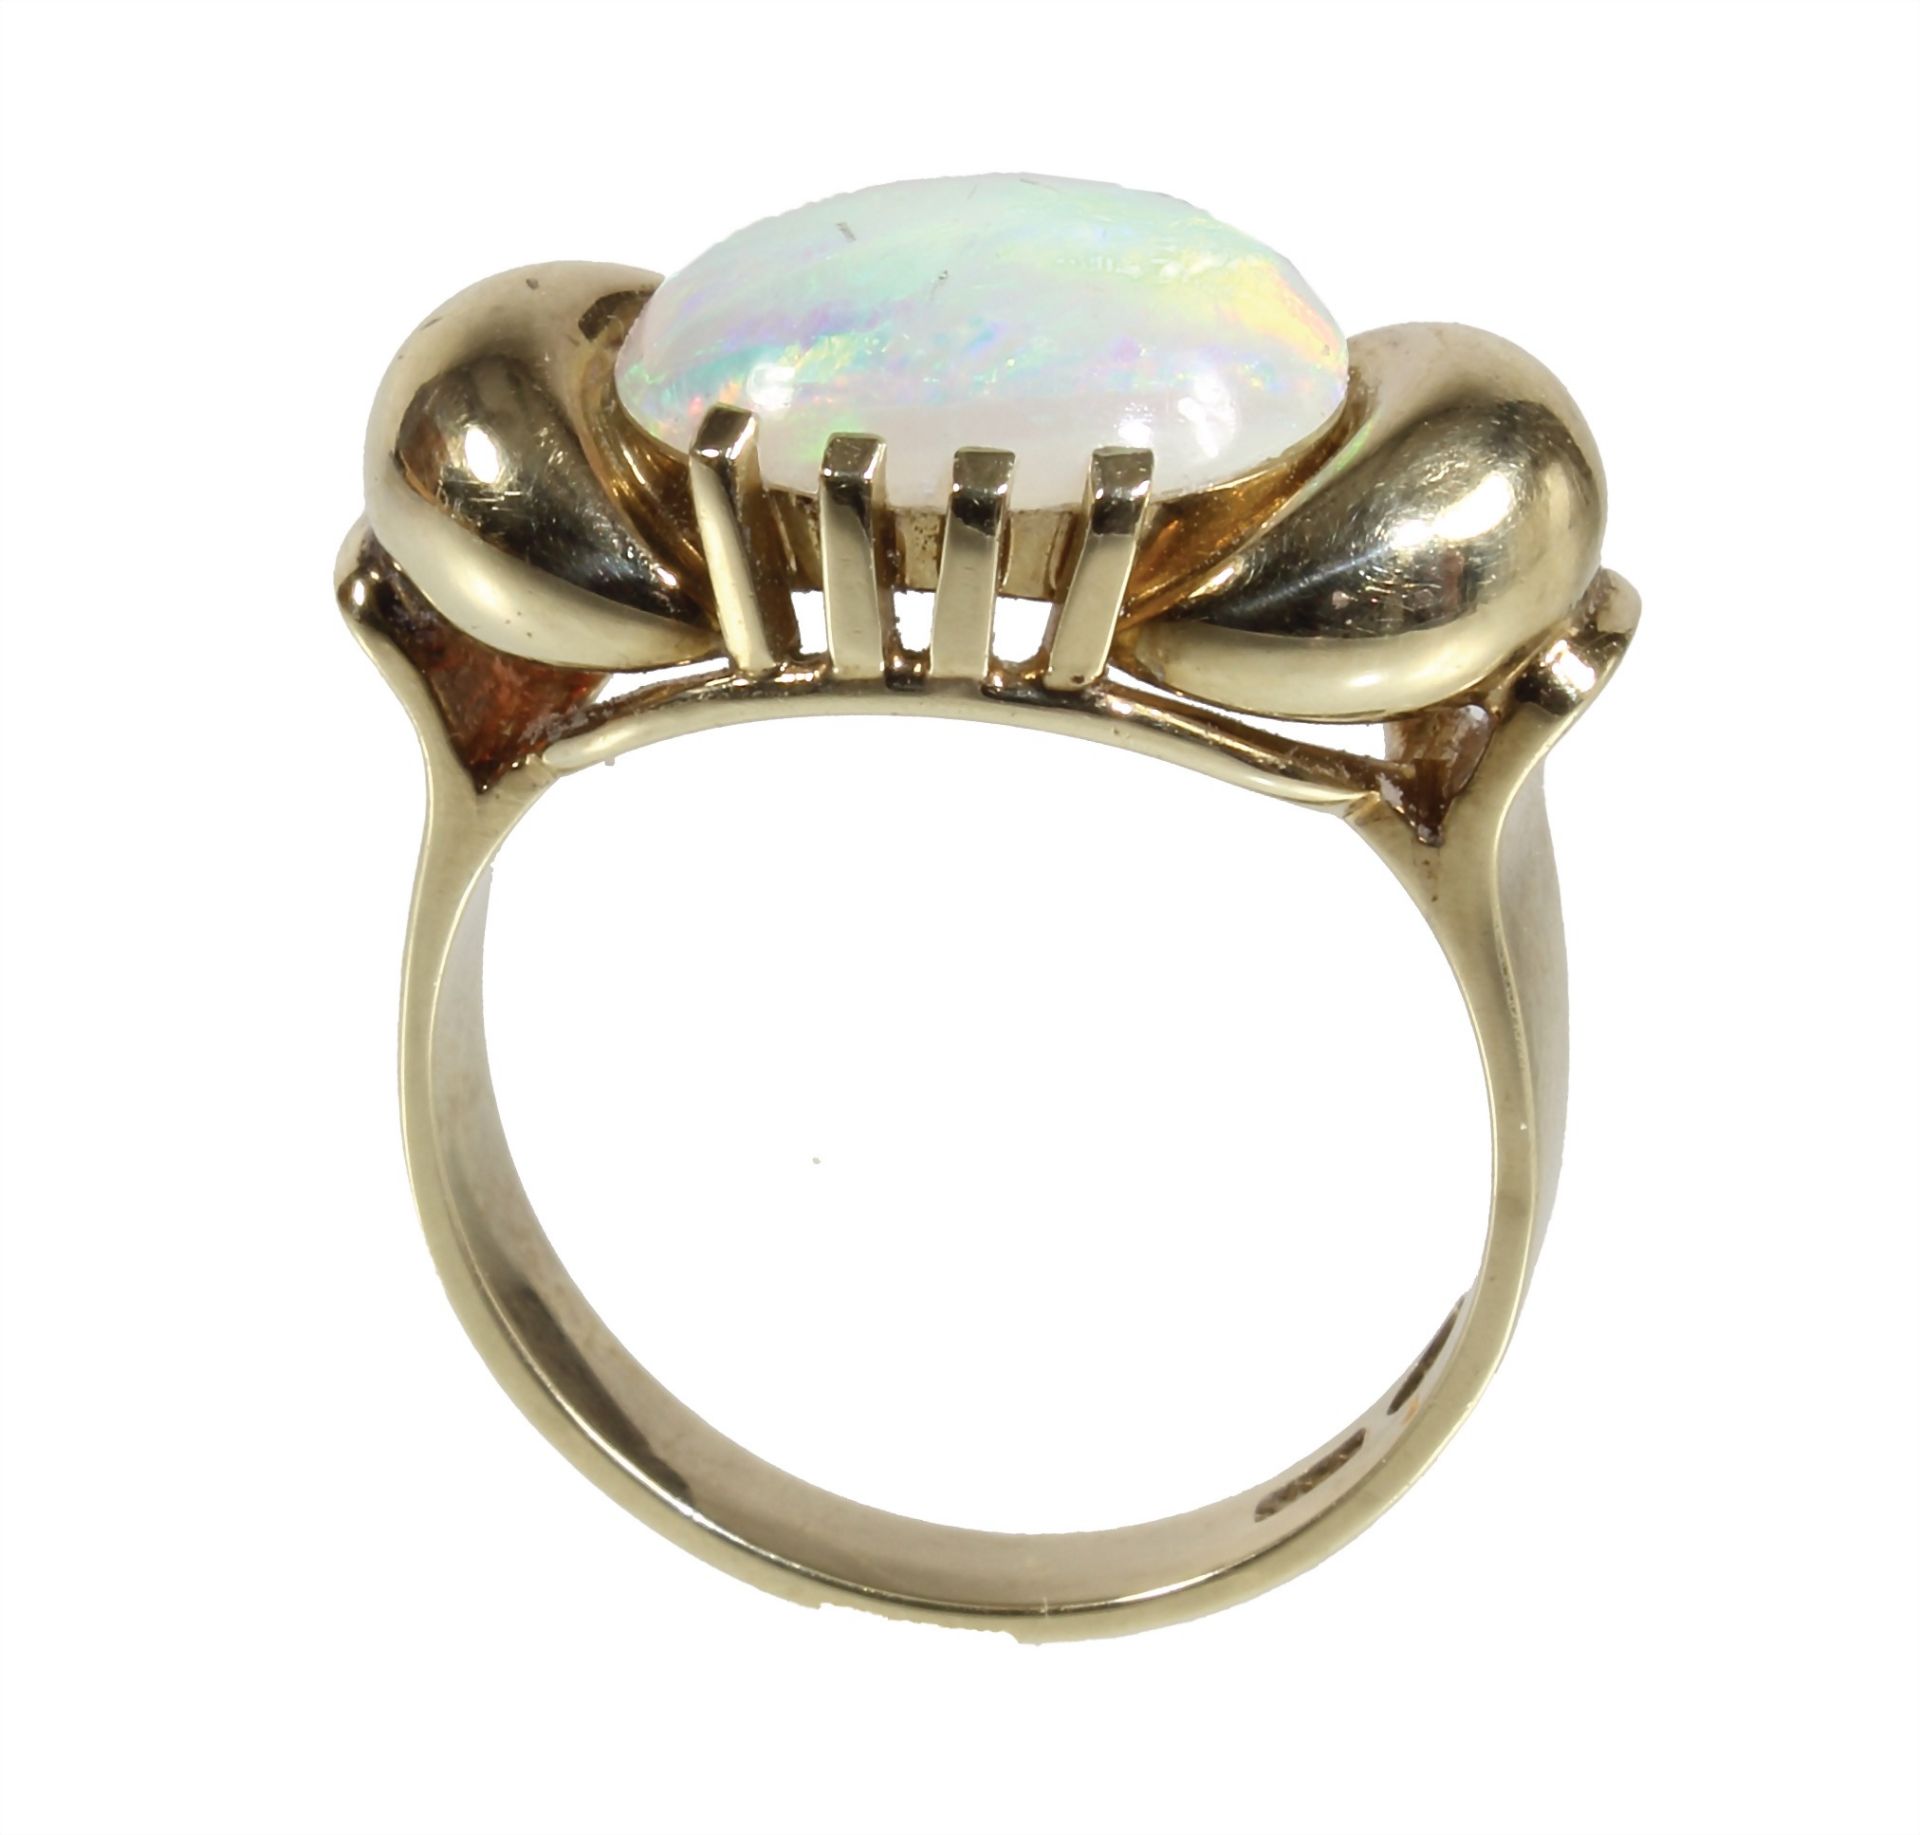 Ring, GG 585/000, Australischer Opal ca. 3,5 ct (12,0 0 x 10,0 mm), schönes Farbenspiel in ... - Bild 2 aus 3